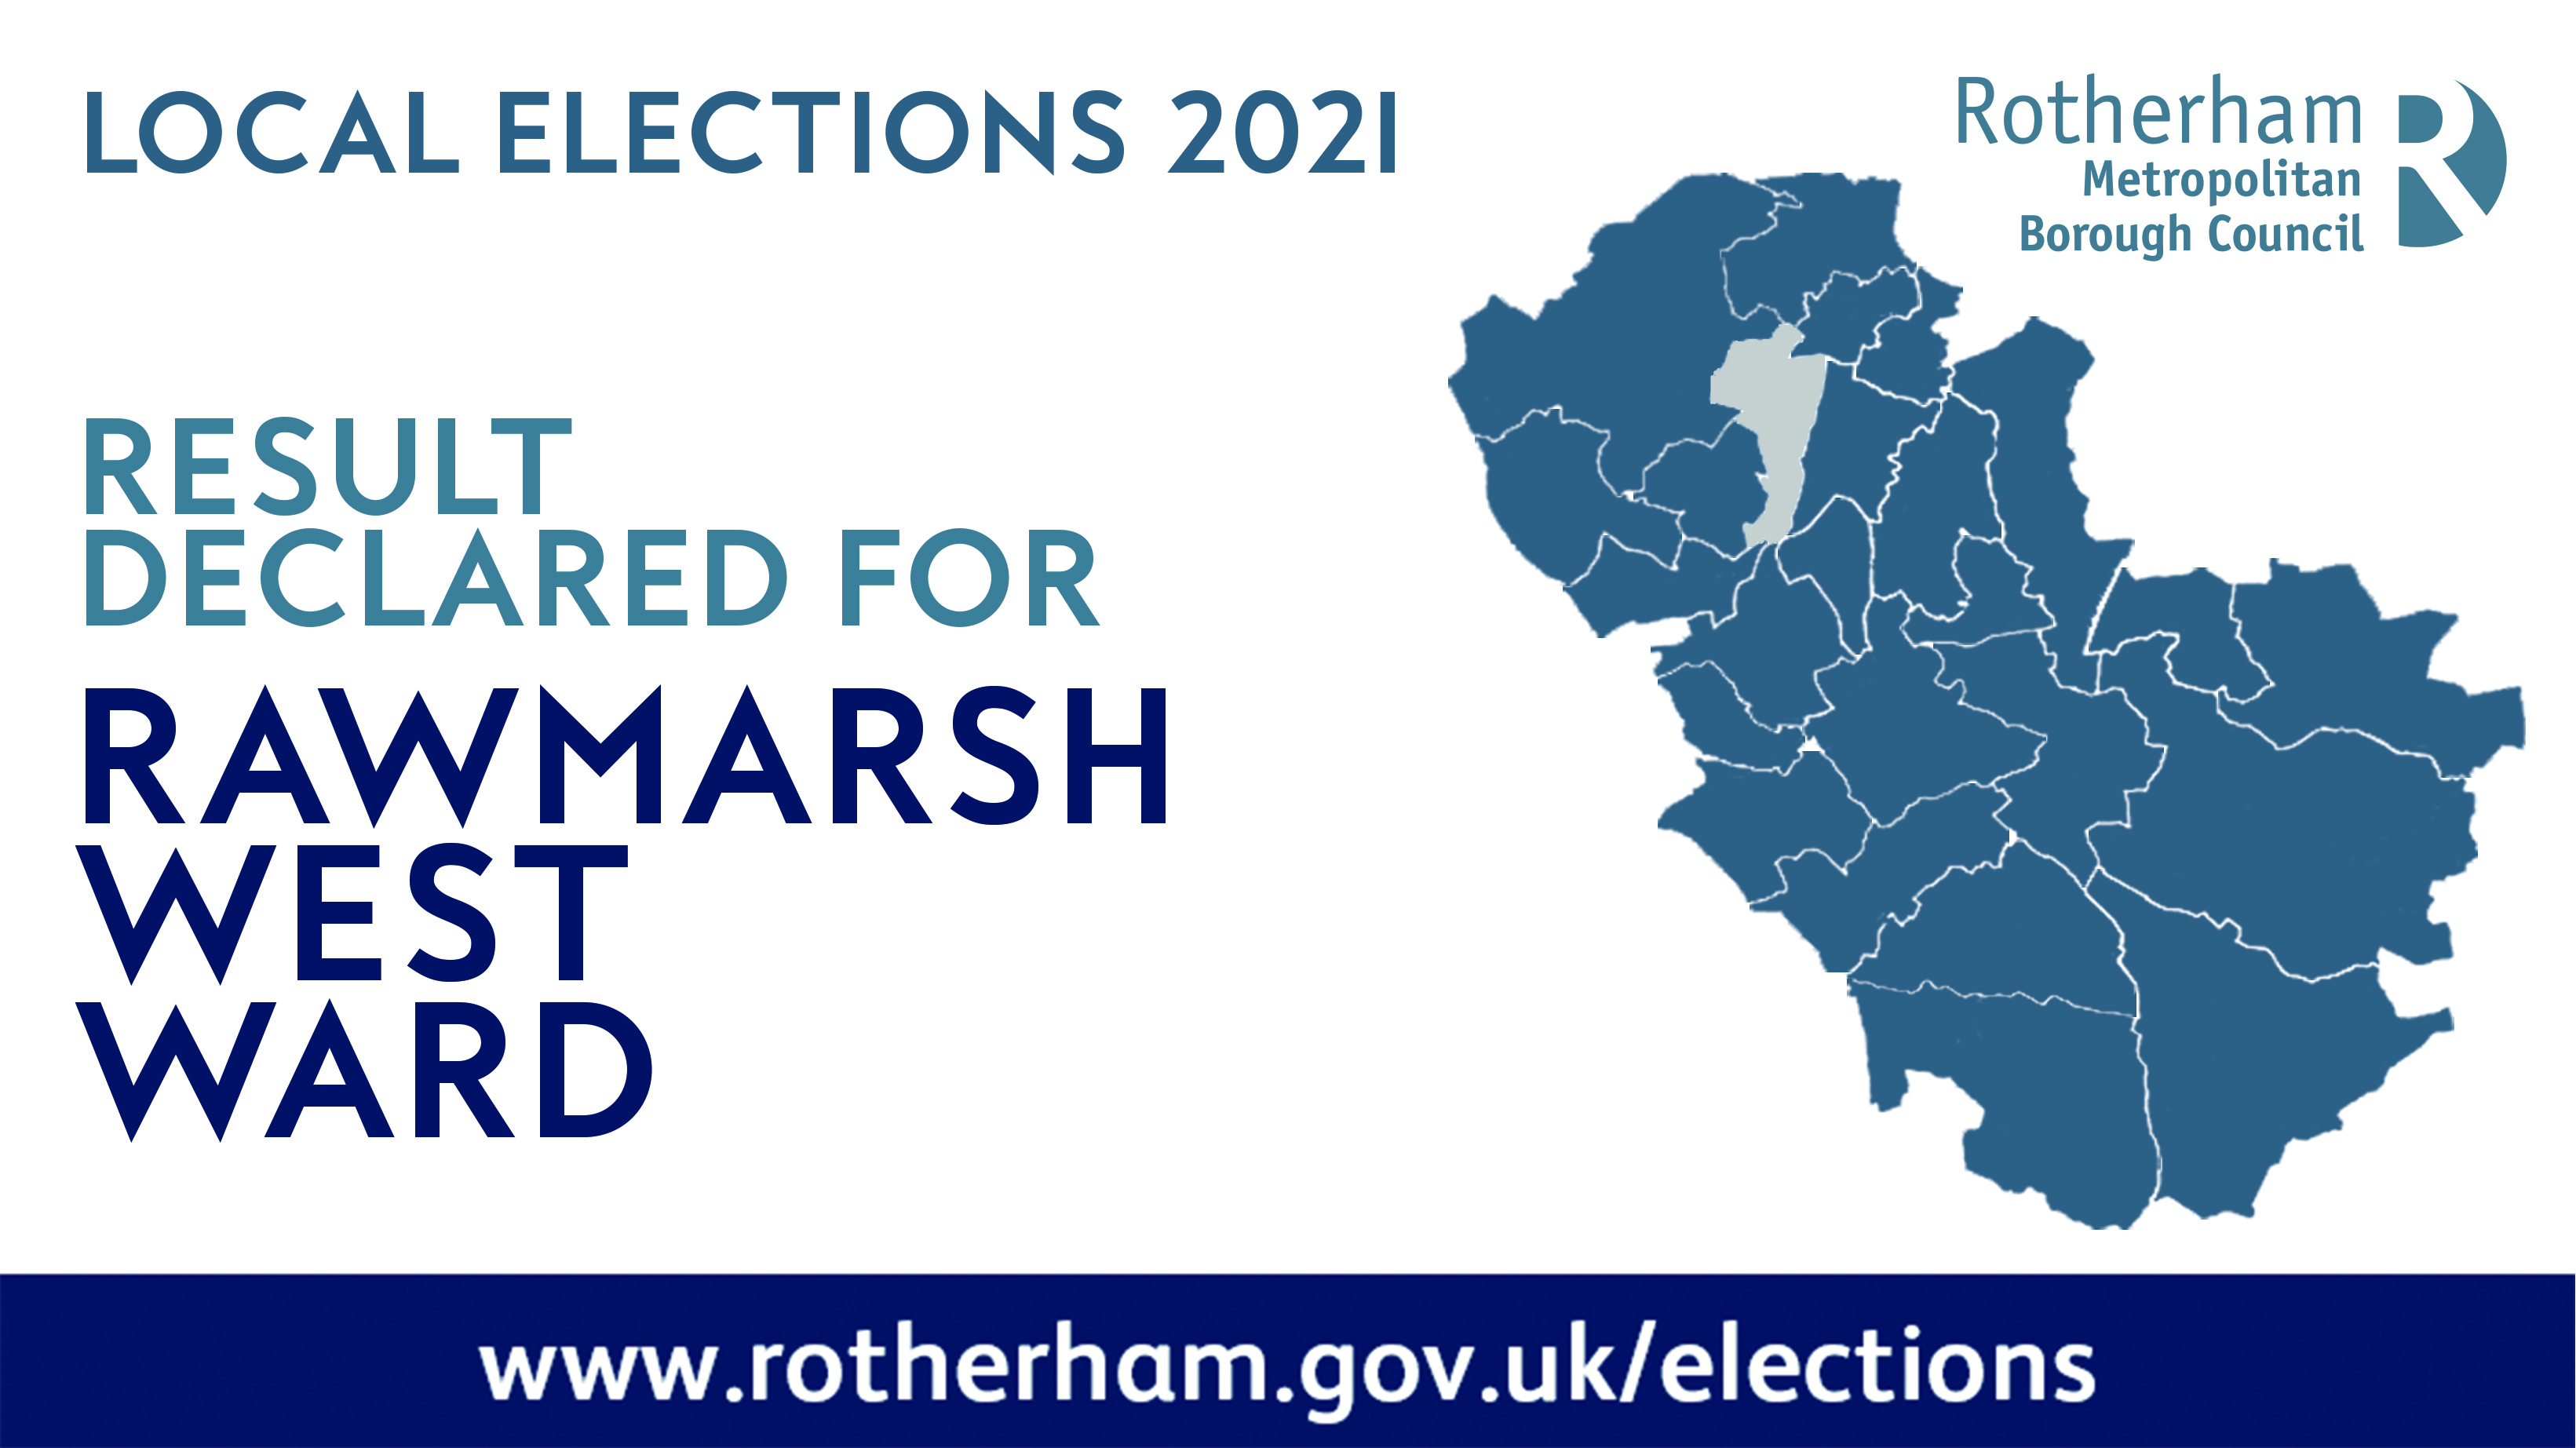 Rawmarsh West ward declared